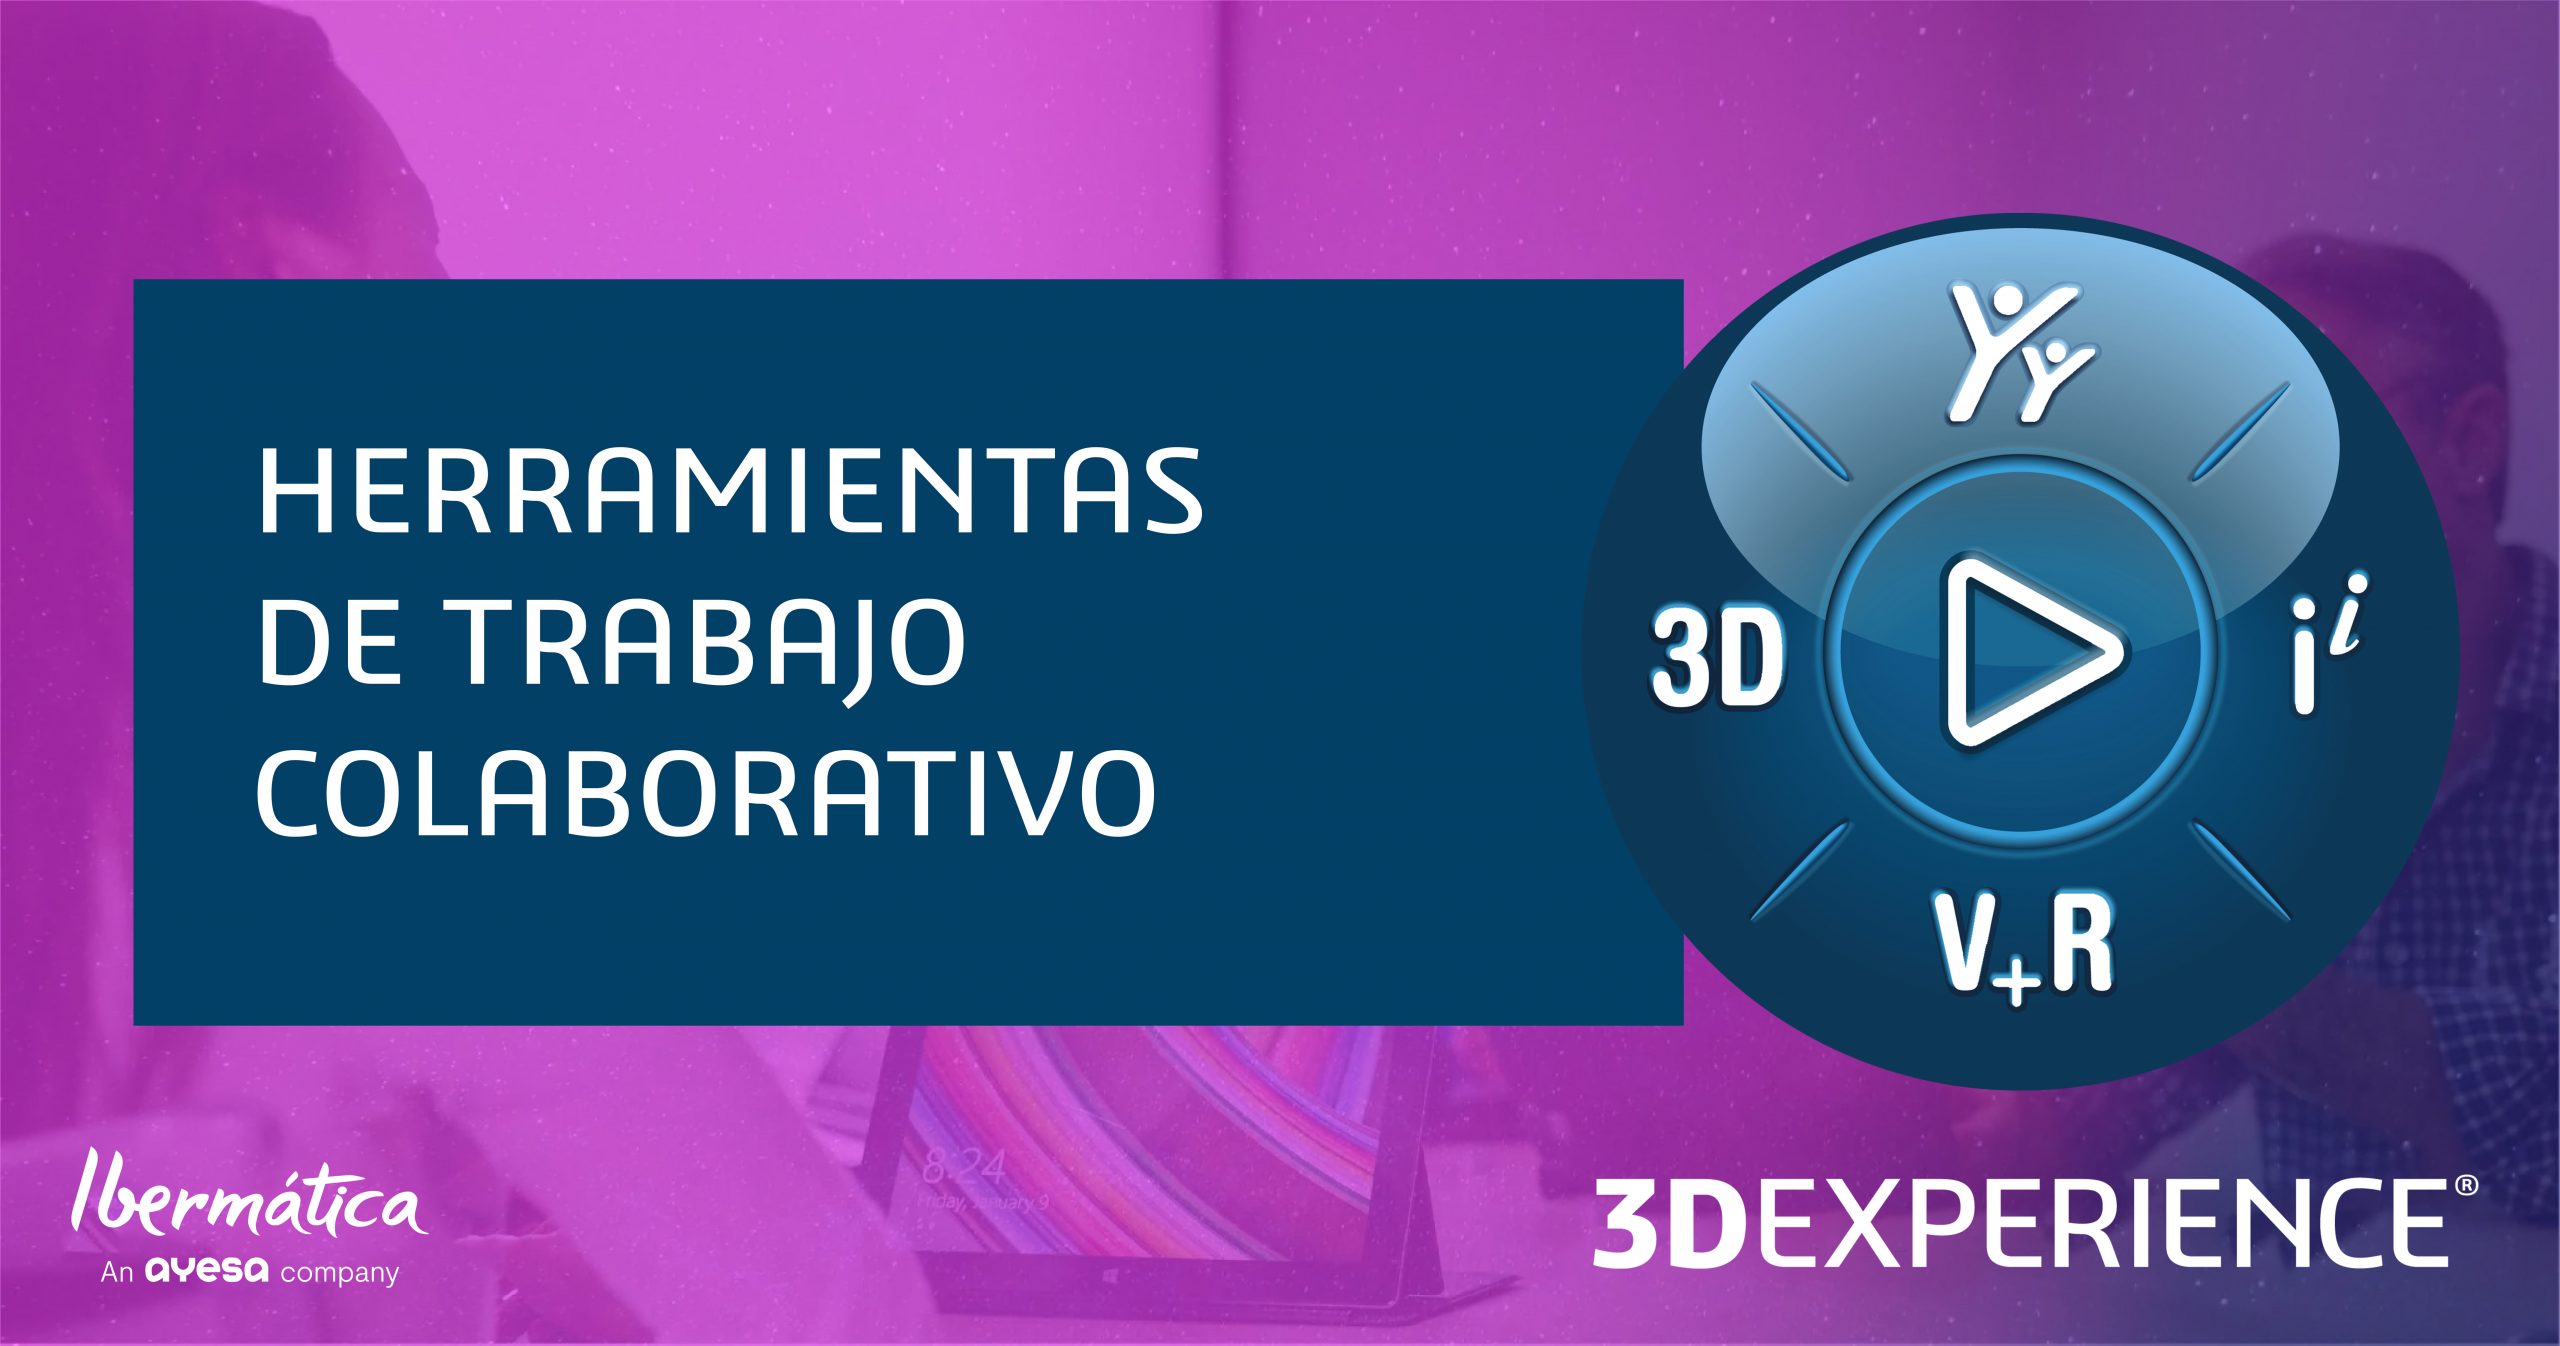 HERRAMIENTAS DE TRABAJO COLABORATIVO: ¿Qué ofrece la 3DEXPERIENCE? ¿Qué roles de trabajo colaborativo tenemos disponibles para la oficina técnica?